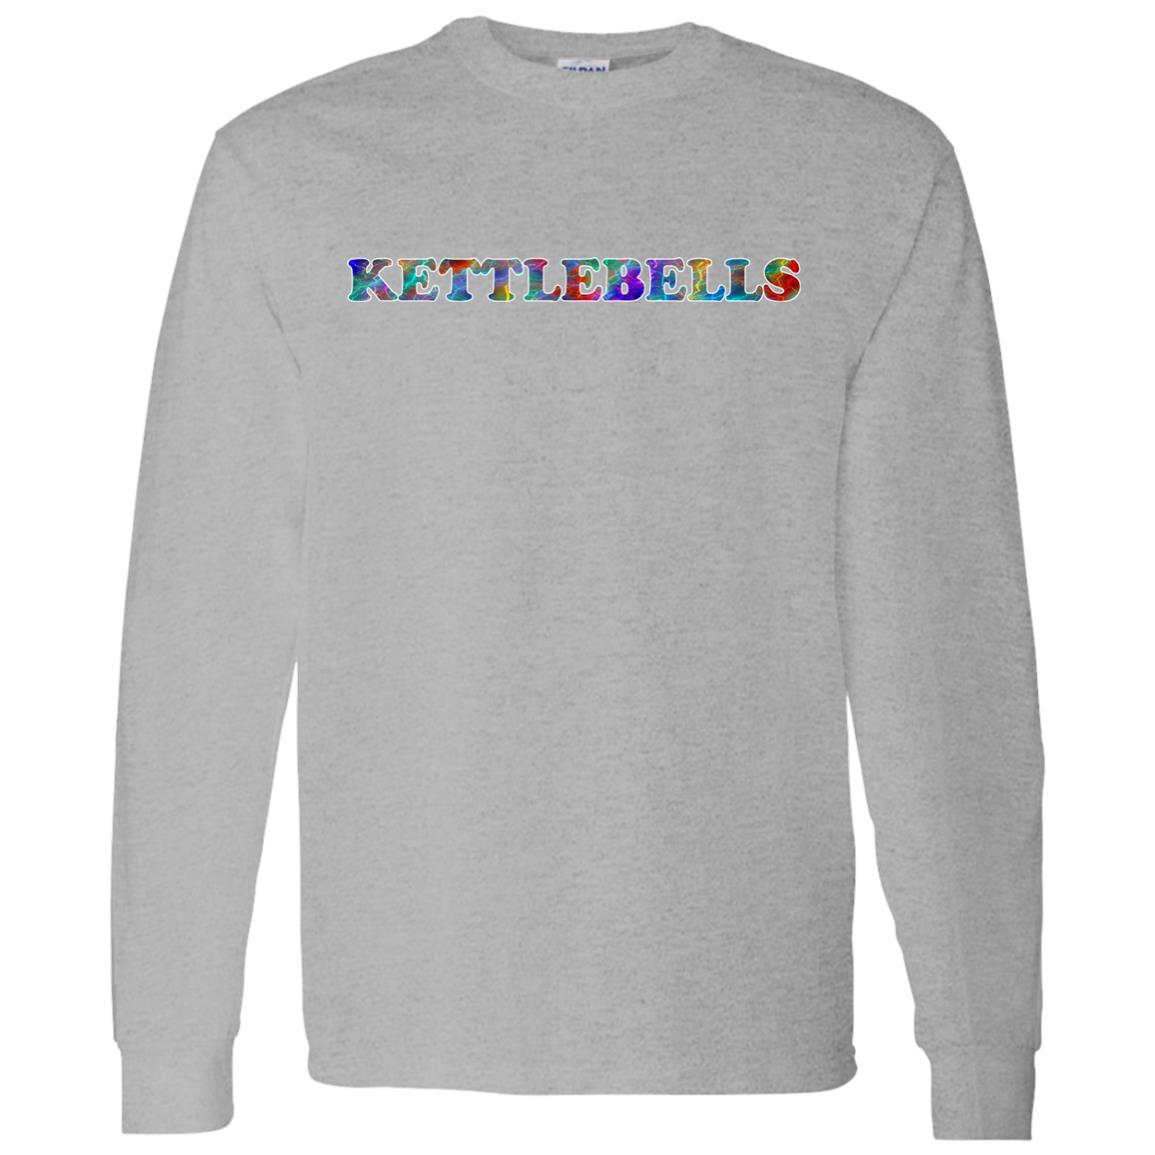 Kettlebells Long Sleeve T-Shirt